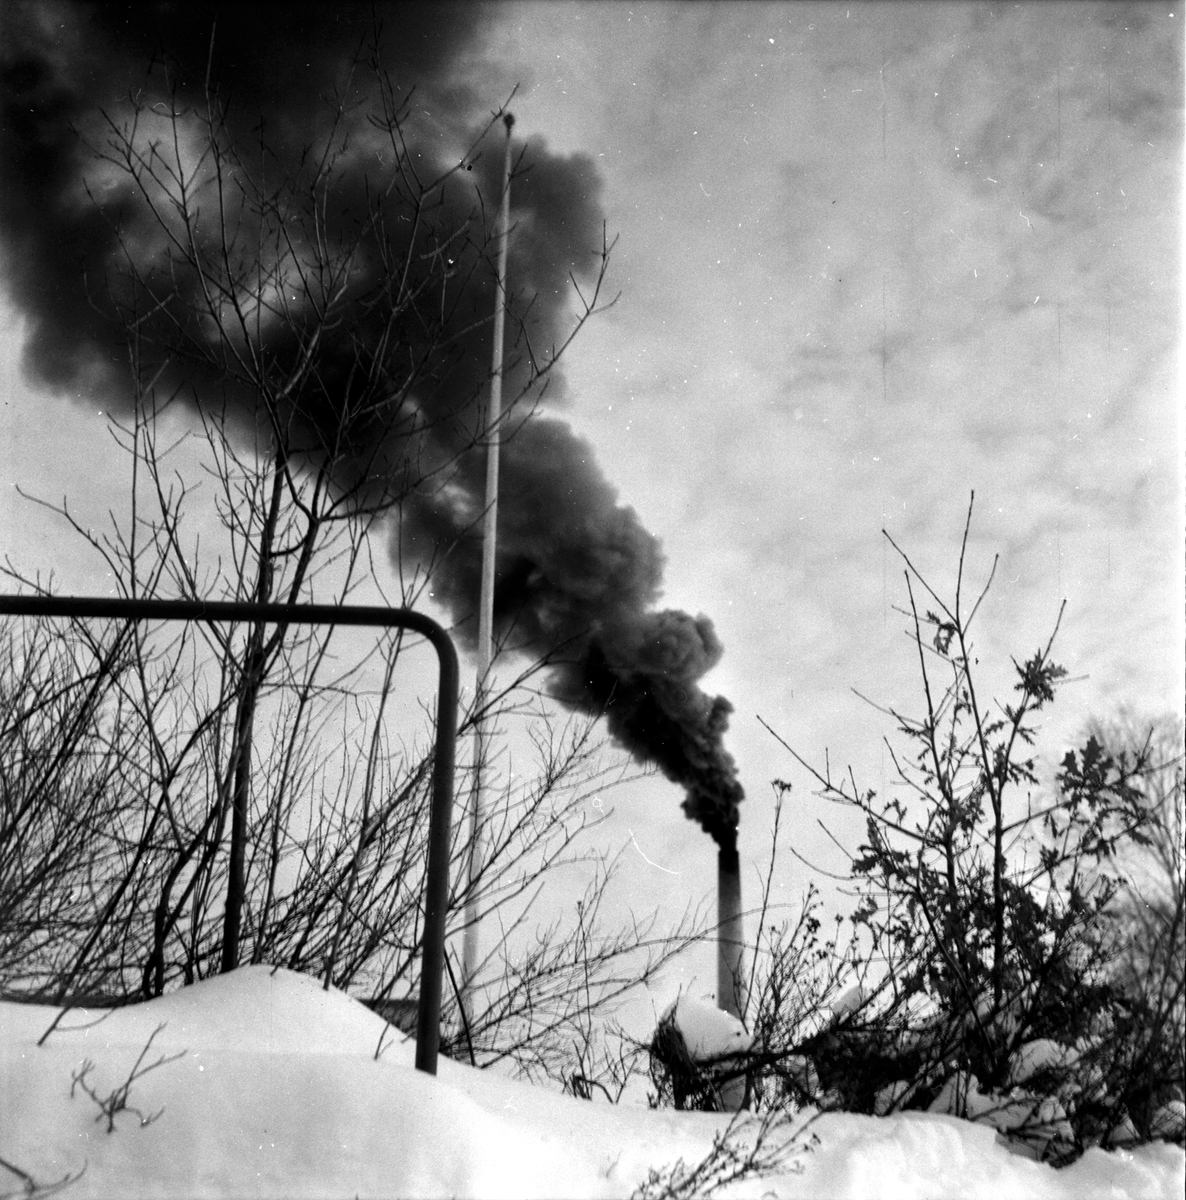 Bollnäs,
Mejeriet,
Rök från skorstenen,
1 Mars 1960